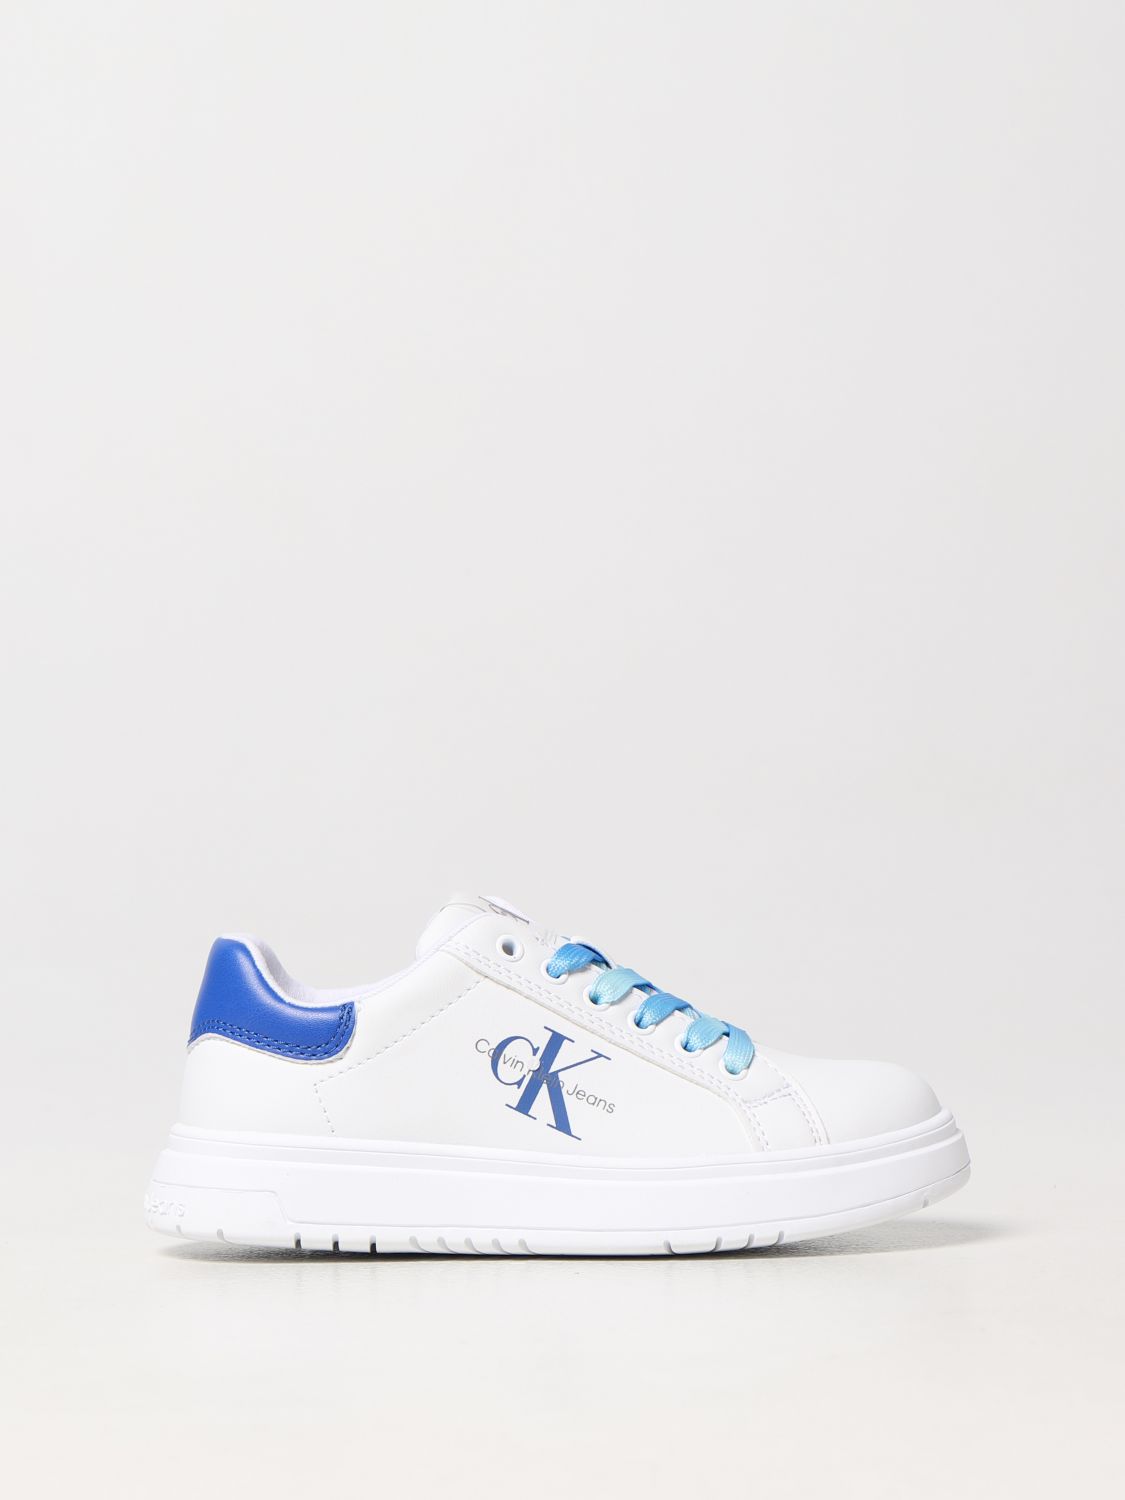 Calvin Klein Kids' Schuhe  Kinder Farbe Weiss In White